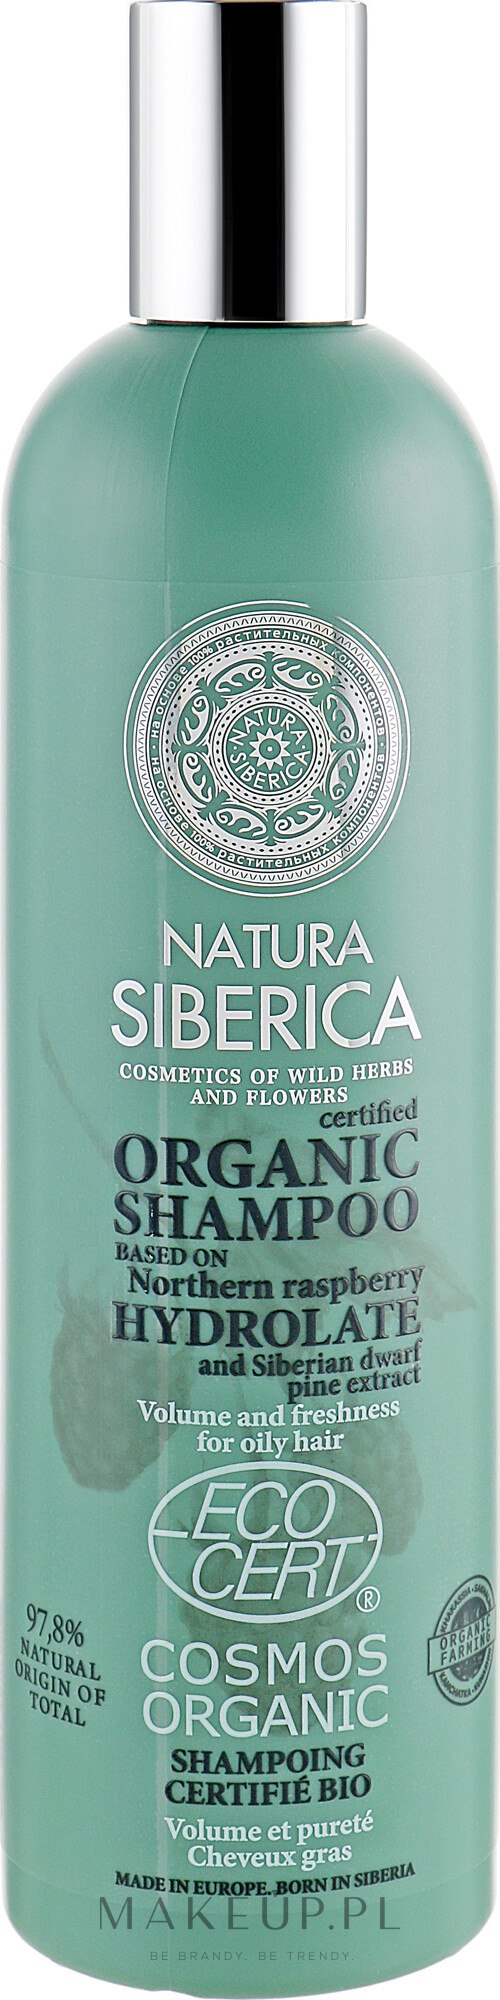 natura siberica szampon do włosów farbowanych opinie wild herbs